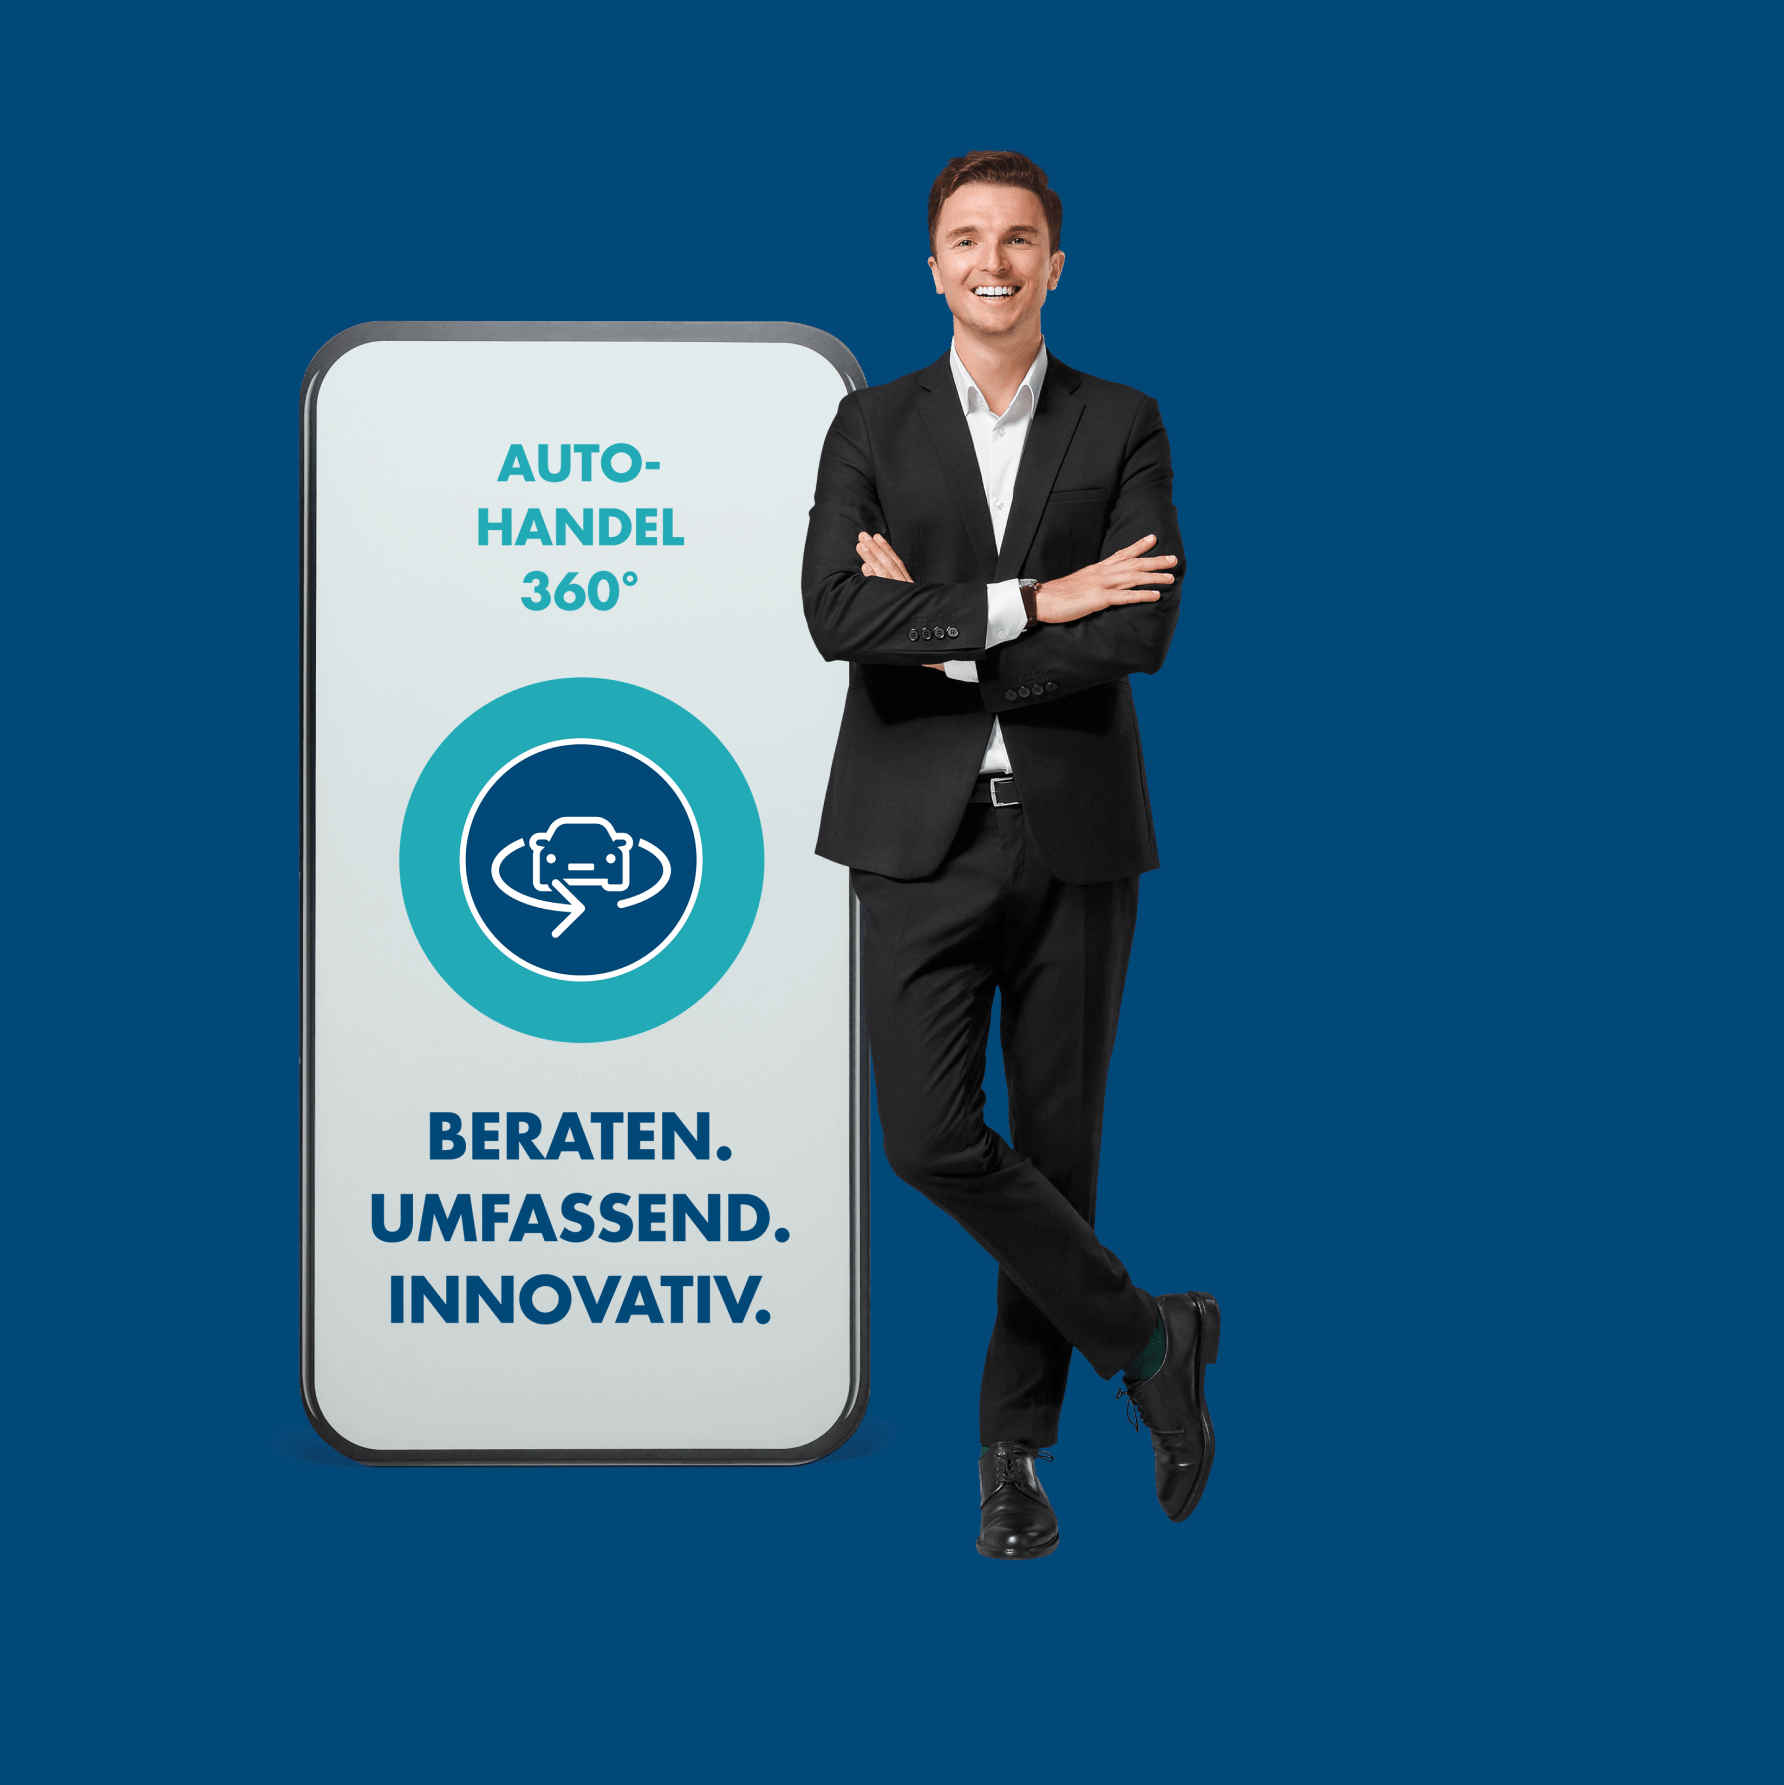 Ein Mann lehnt sich an ein überdimensionales Smartphone auf dem Autohandel 360 Grad steht.